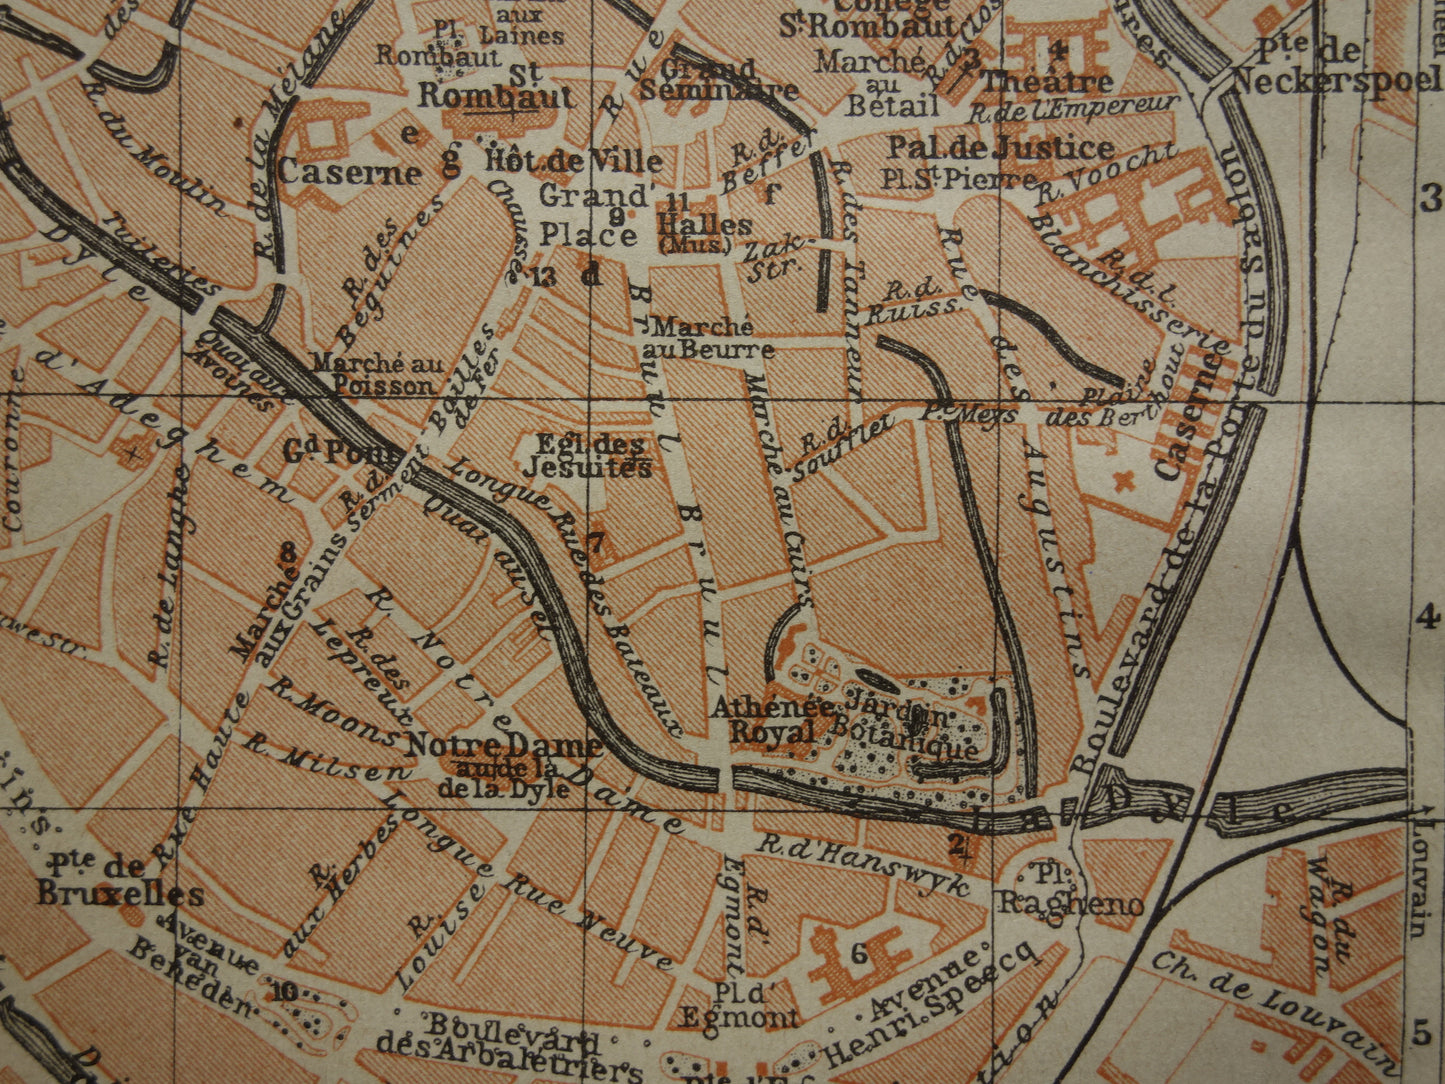 MECHELEN oude kaart van Malines België uit 1904 kleine originele antieke plattegrond landkaart Mechelen / Malines